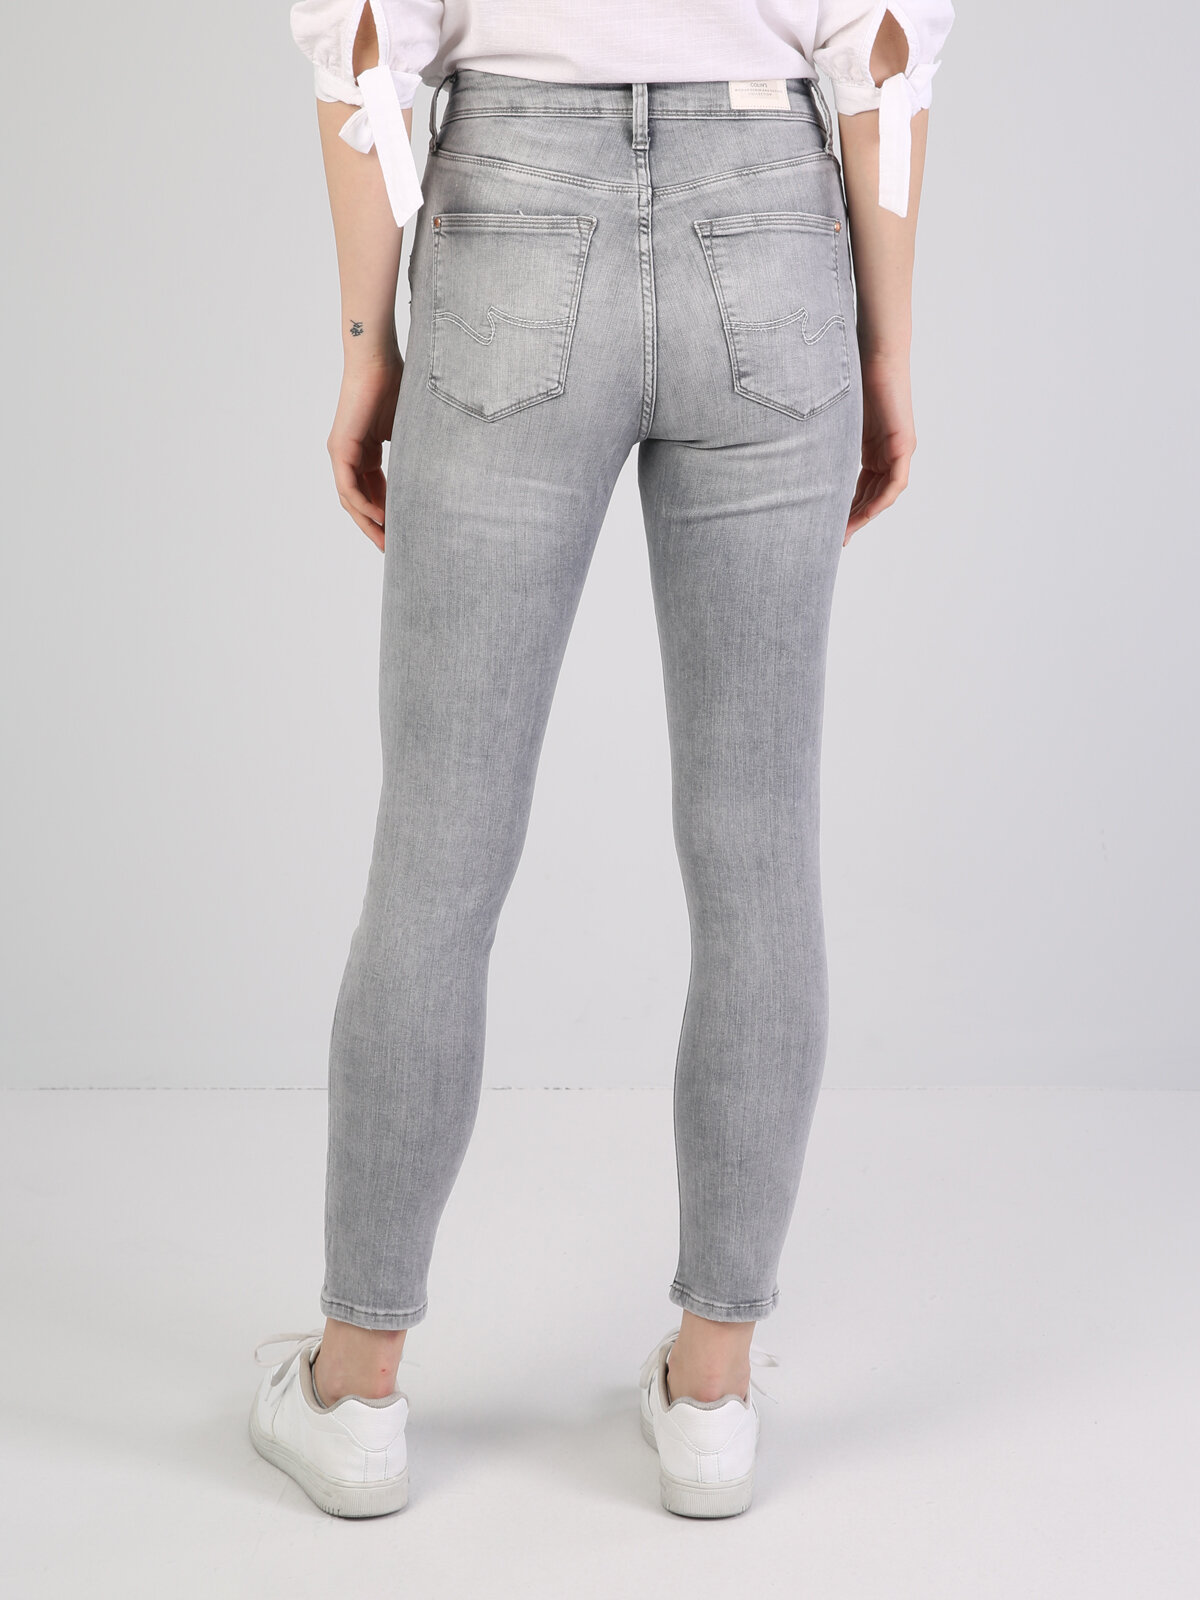 Colins 760 Dıana Yüksek Bel Dar Paça Super Slim Fit Açık Gri Kadın Jean Pantolon. 2